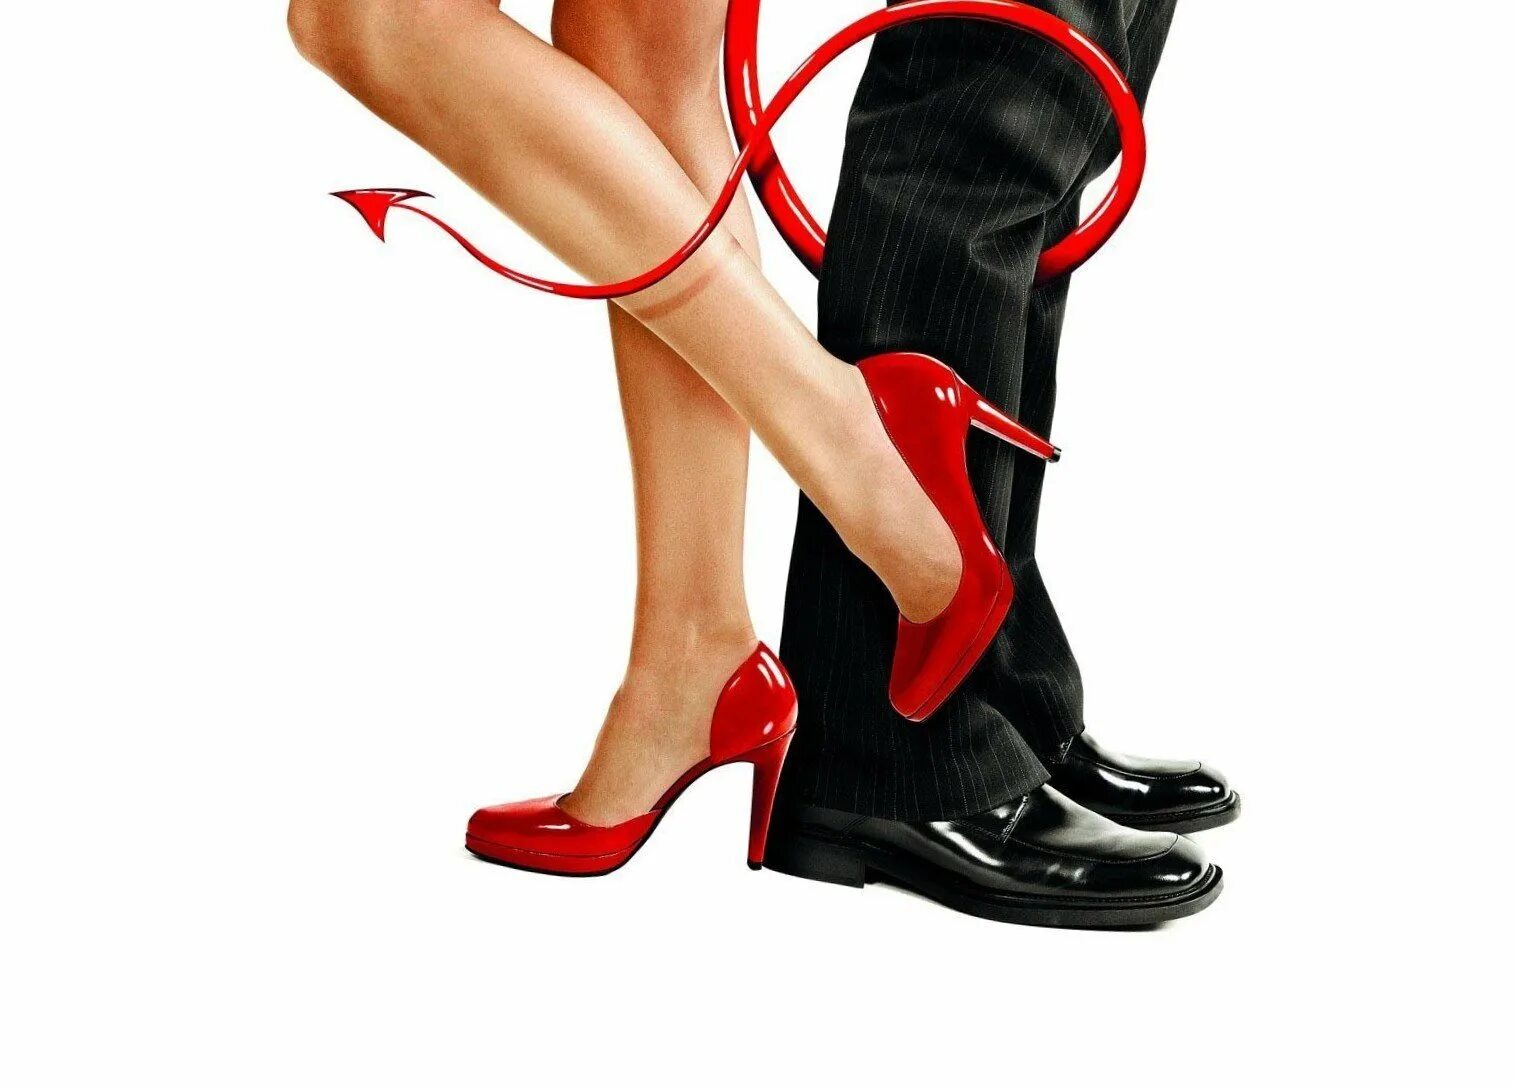 Женские ноги в туфлях. Обувь мужская и женская. Девушка в красных туфлях на каблуке. Мужские ноги в женских туфлях. Надевать чужую обувь